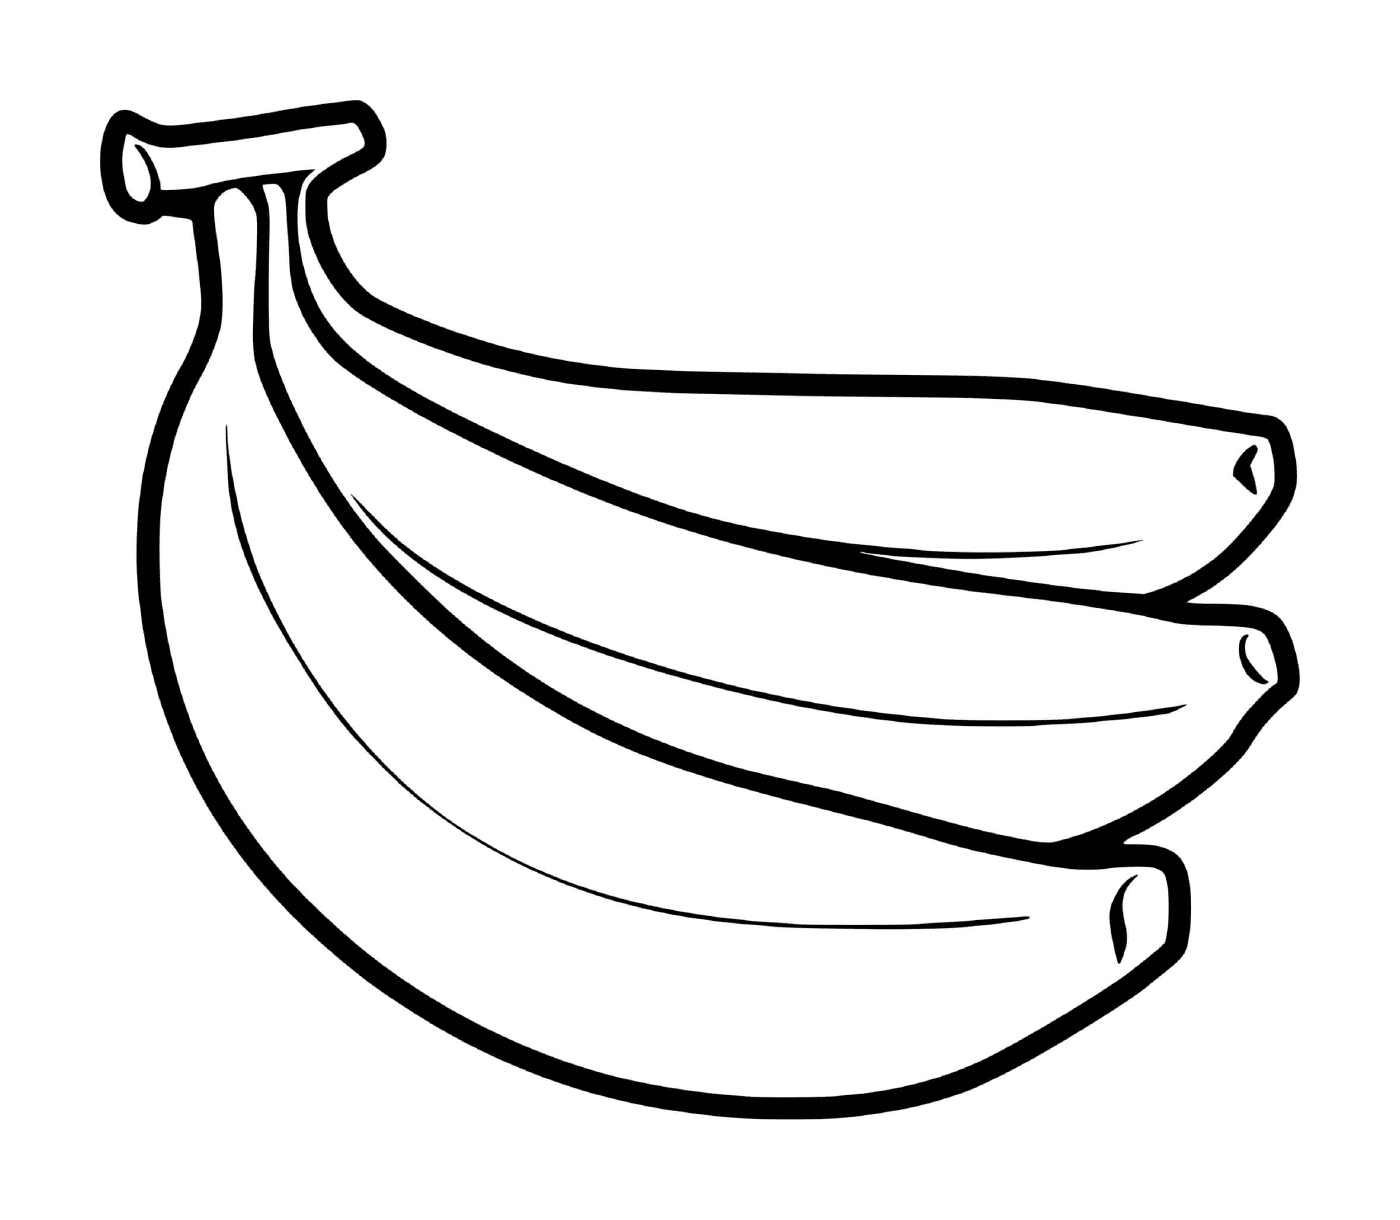  مجموعة من الموز زرعت على الأرض 